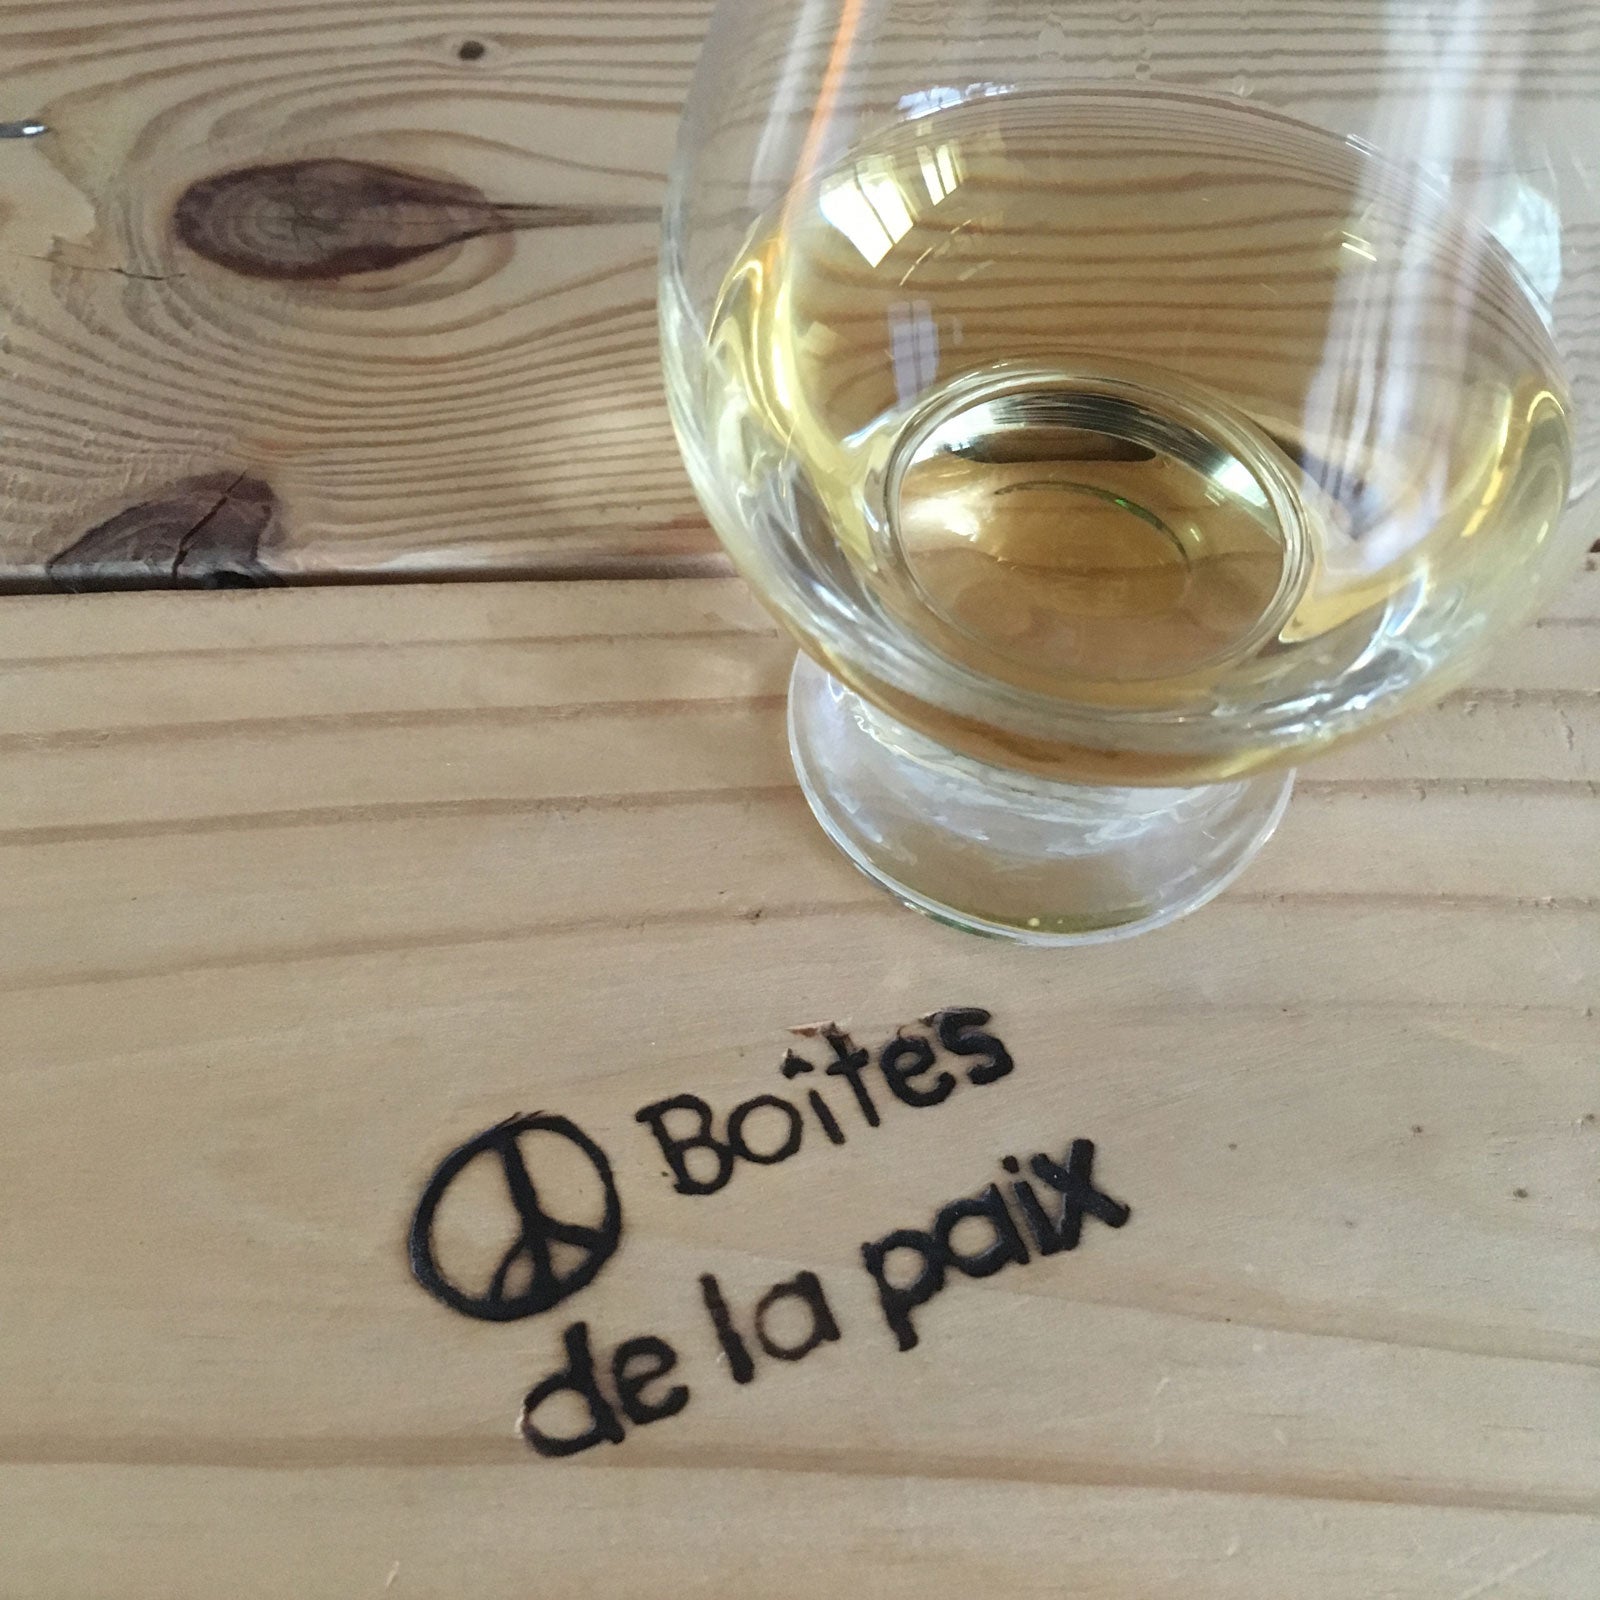 Boites de la Paix brings spirit to happy hour